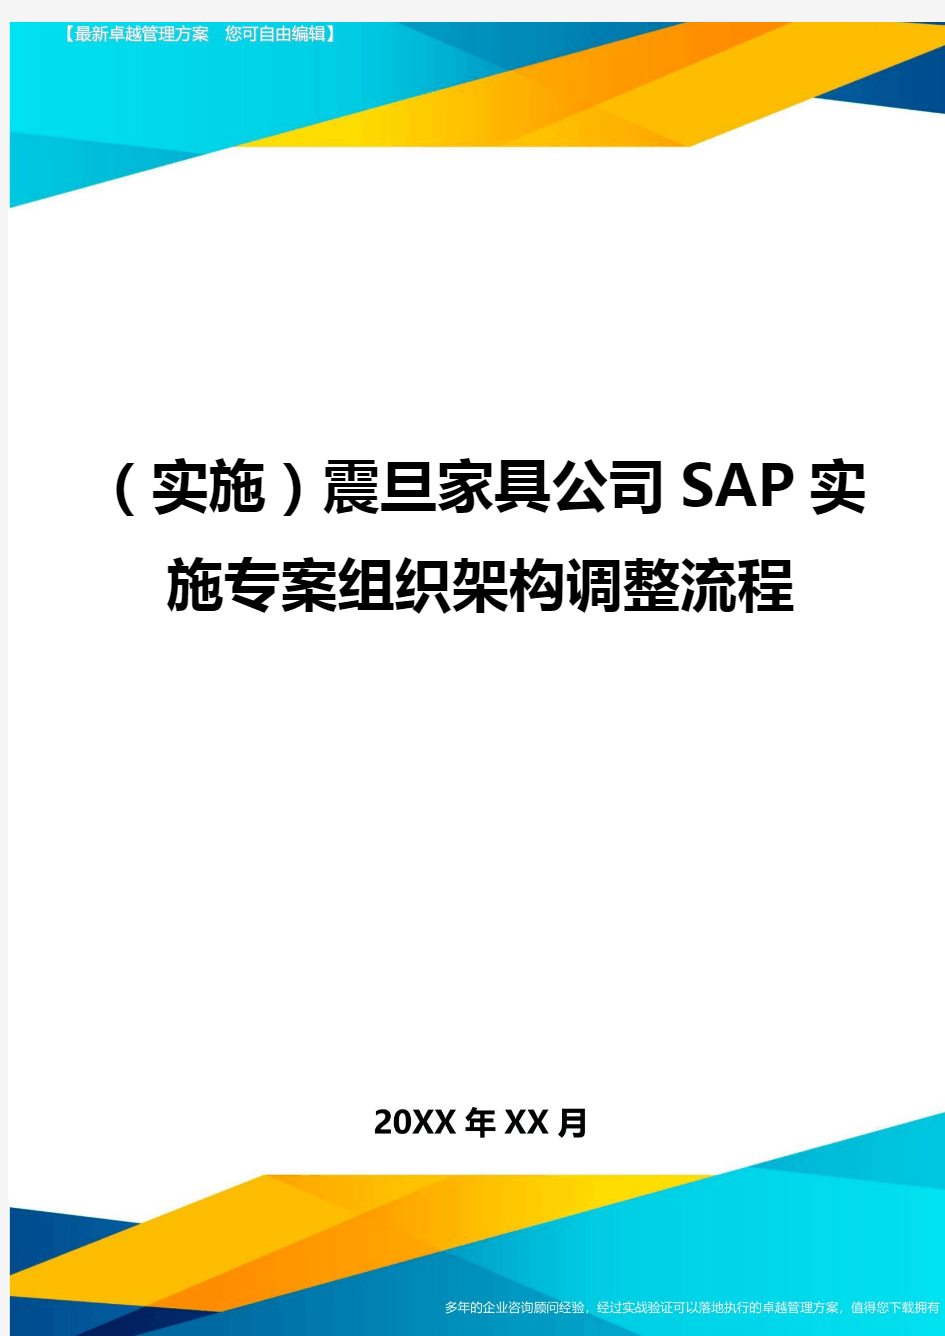 {实施震旦家具公司SAP实施专案组织架构调整流程